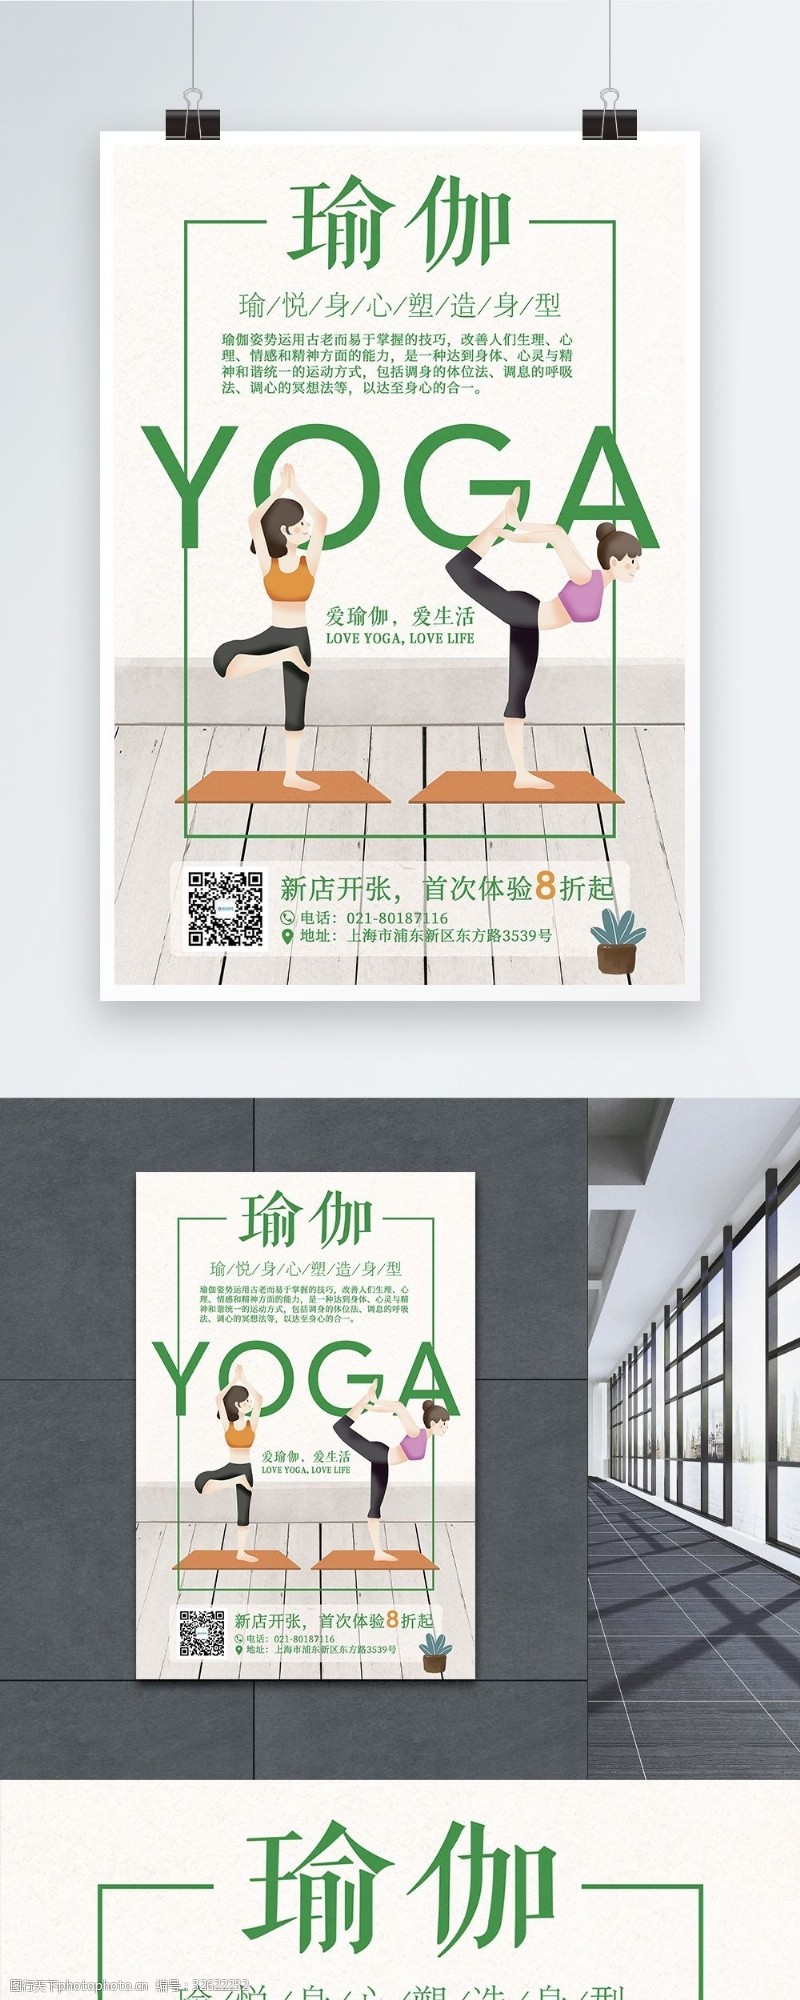 新张力瑜伽新店开张海报